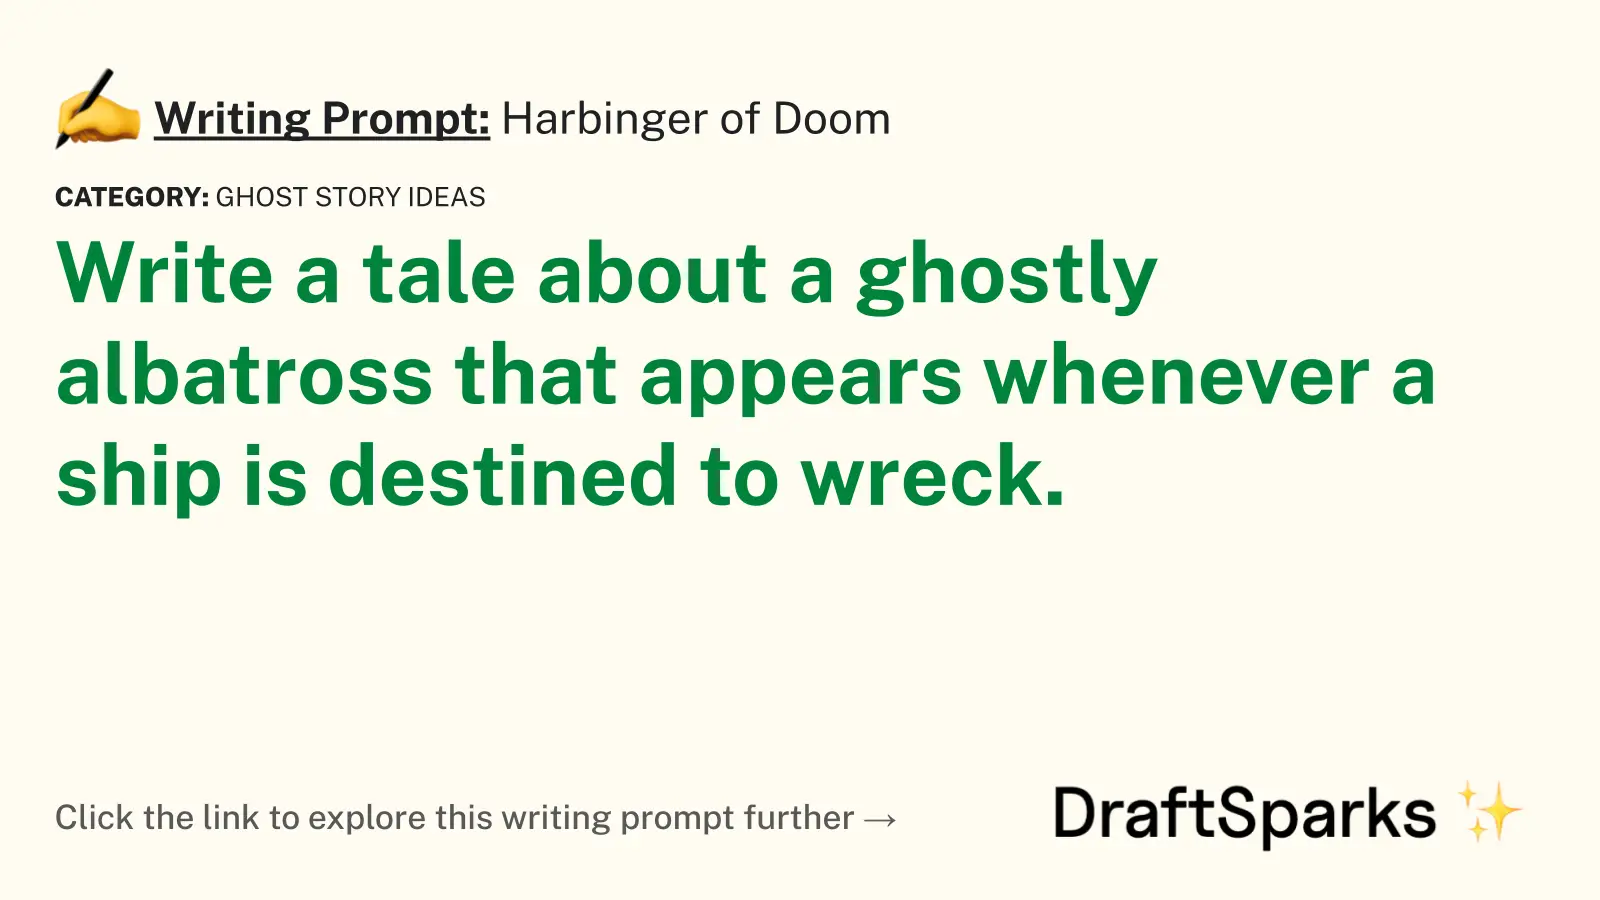 Harbinger of Doom